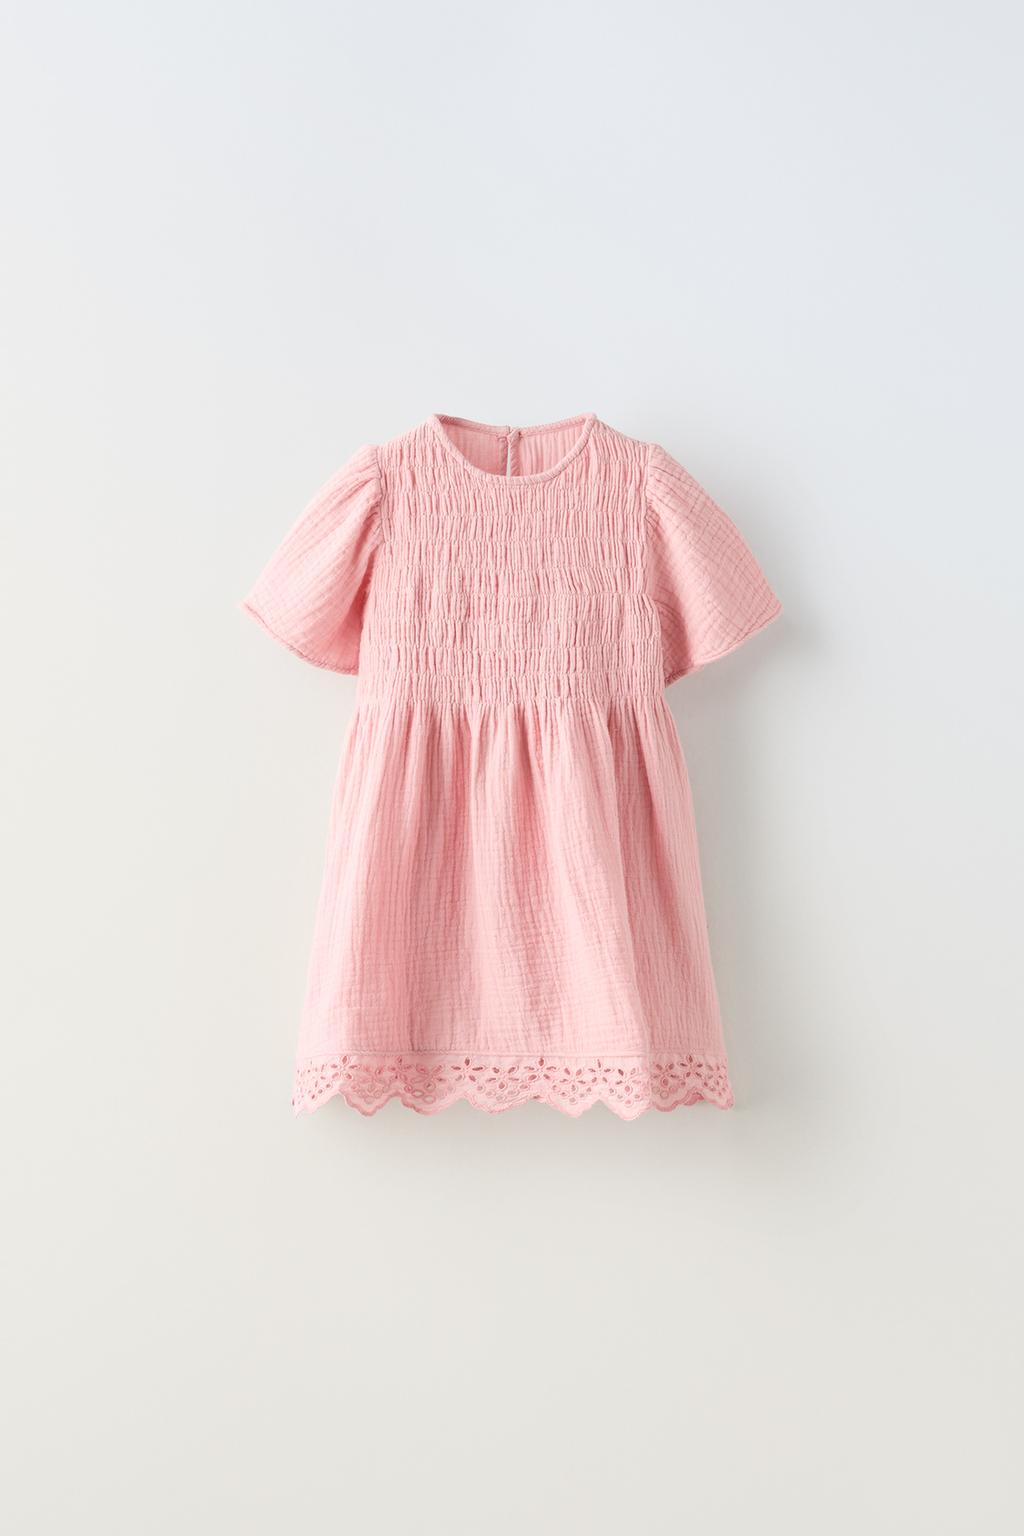 Эластичное текстурированное платье ZARA, розовый жакет на пуговицах с кружевной отделкой